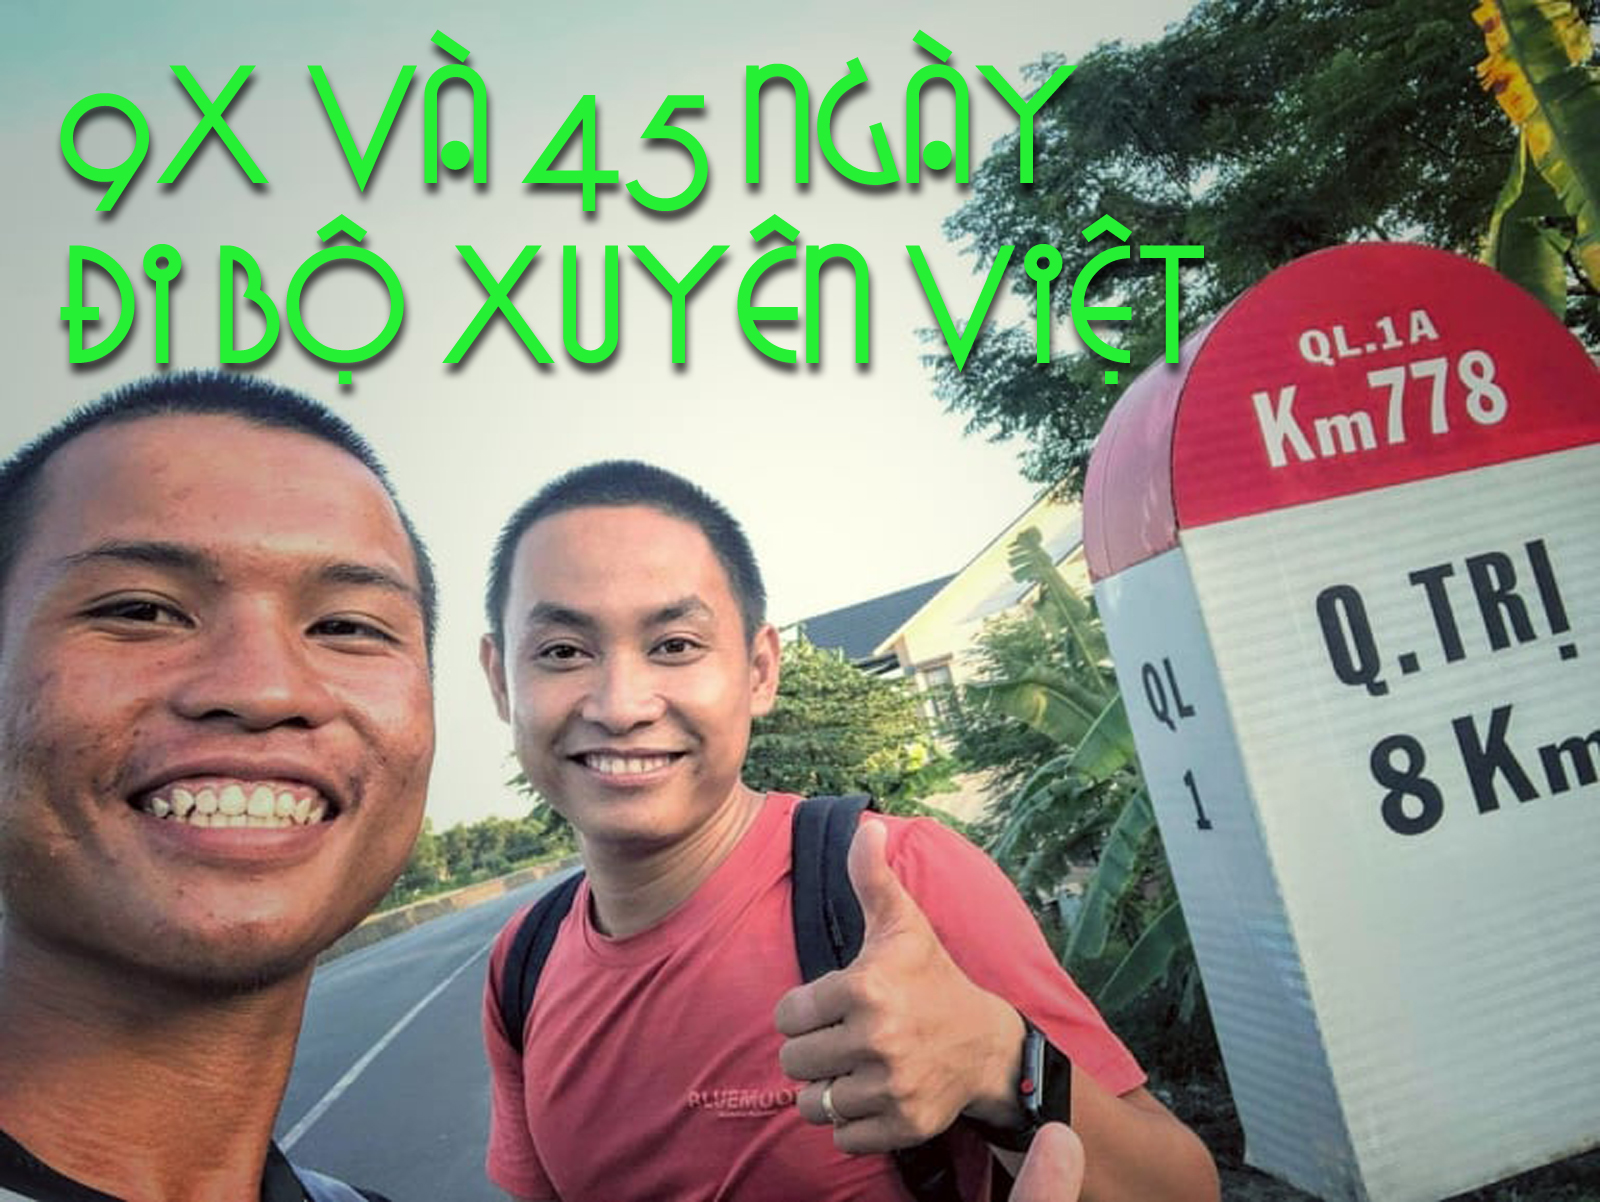 Hành trình 45 ngày đi bộ xuyên Việt và hành động cực đẹp của thanh niên 9X - 1